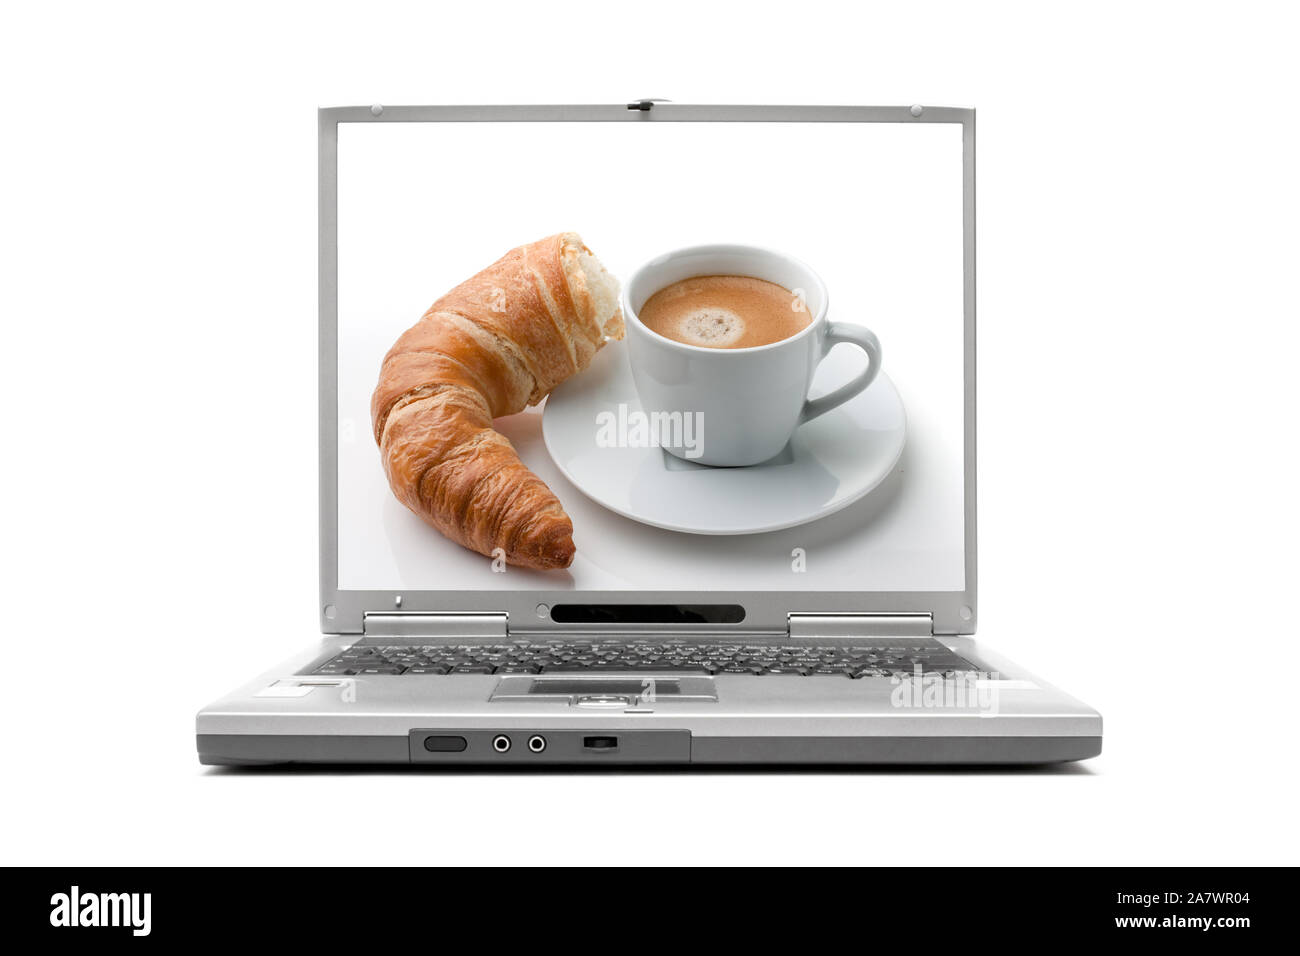 Laptop zeigt Frühstück, Croissant und Milchkaffee, Stock Photo